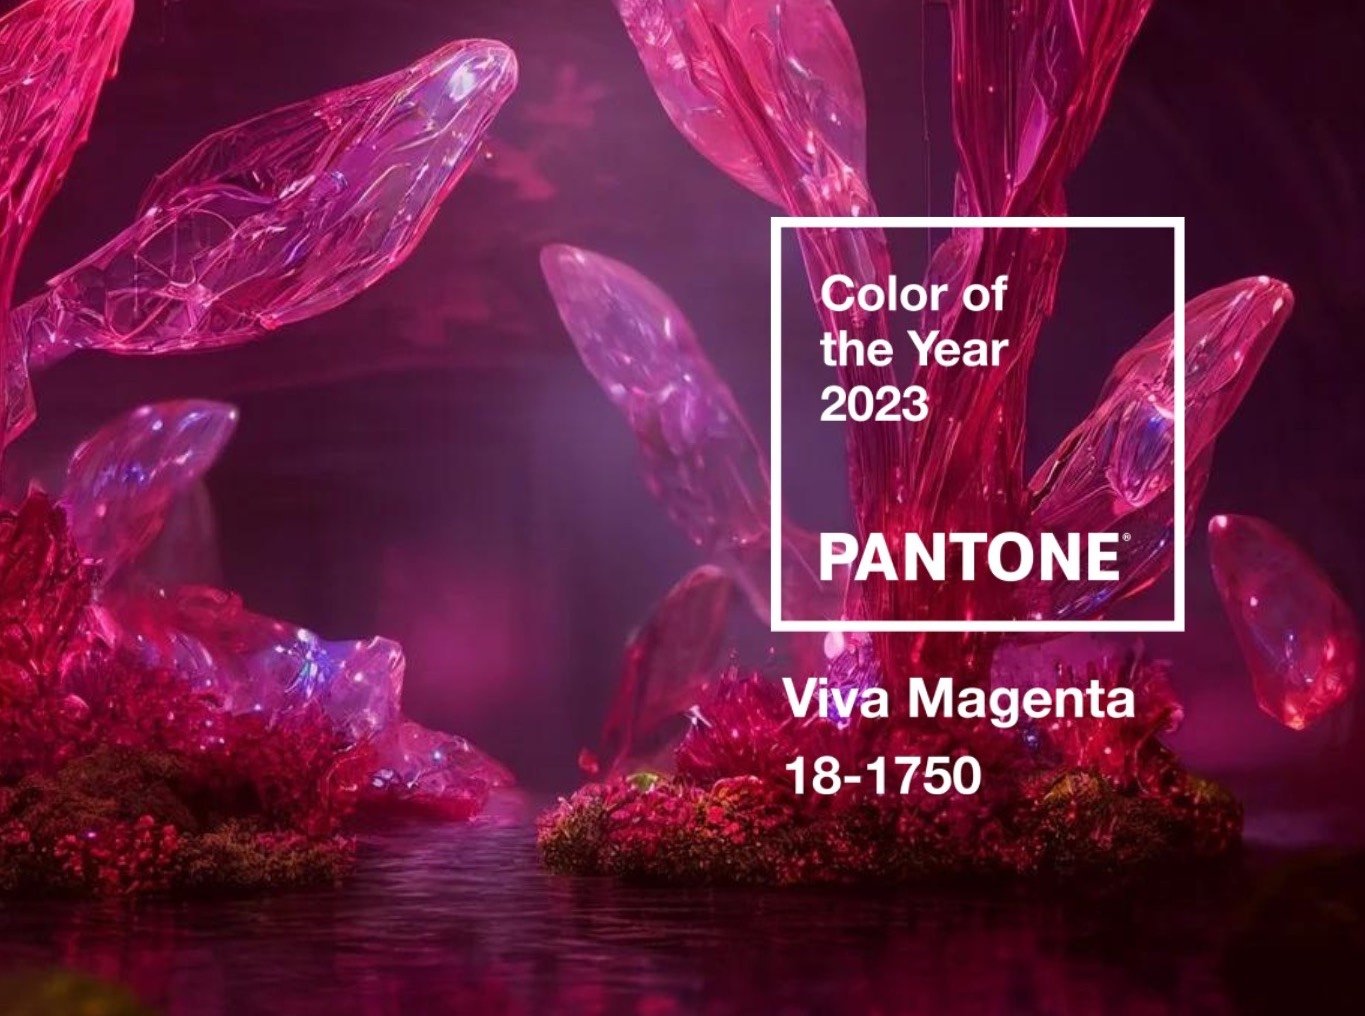 Barvou roku 2023 je dle Pantone karmínová Viva Magenta